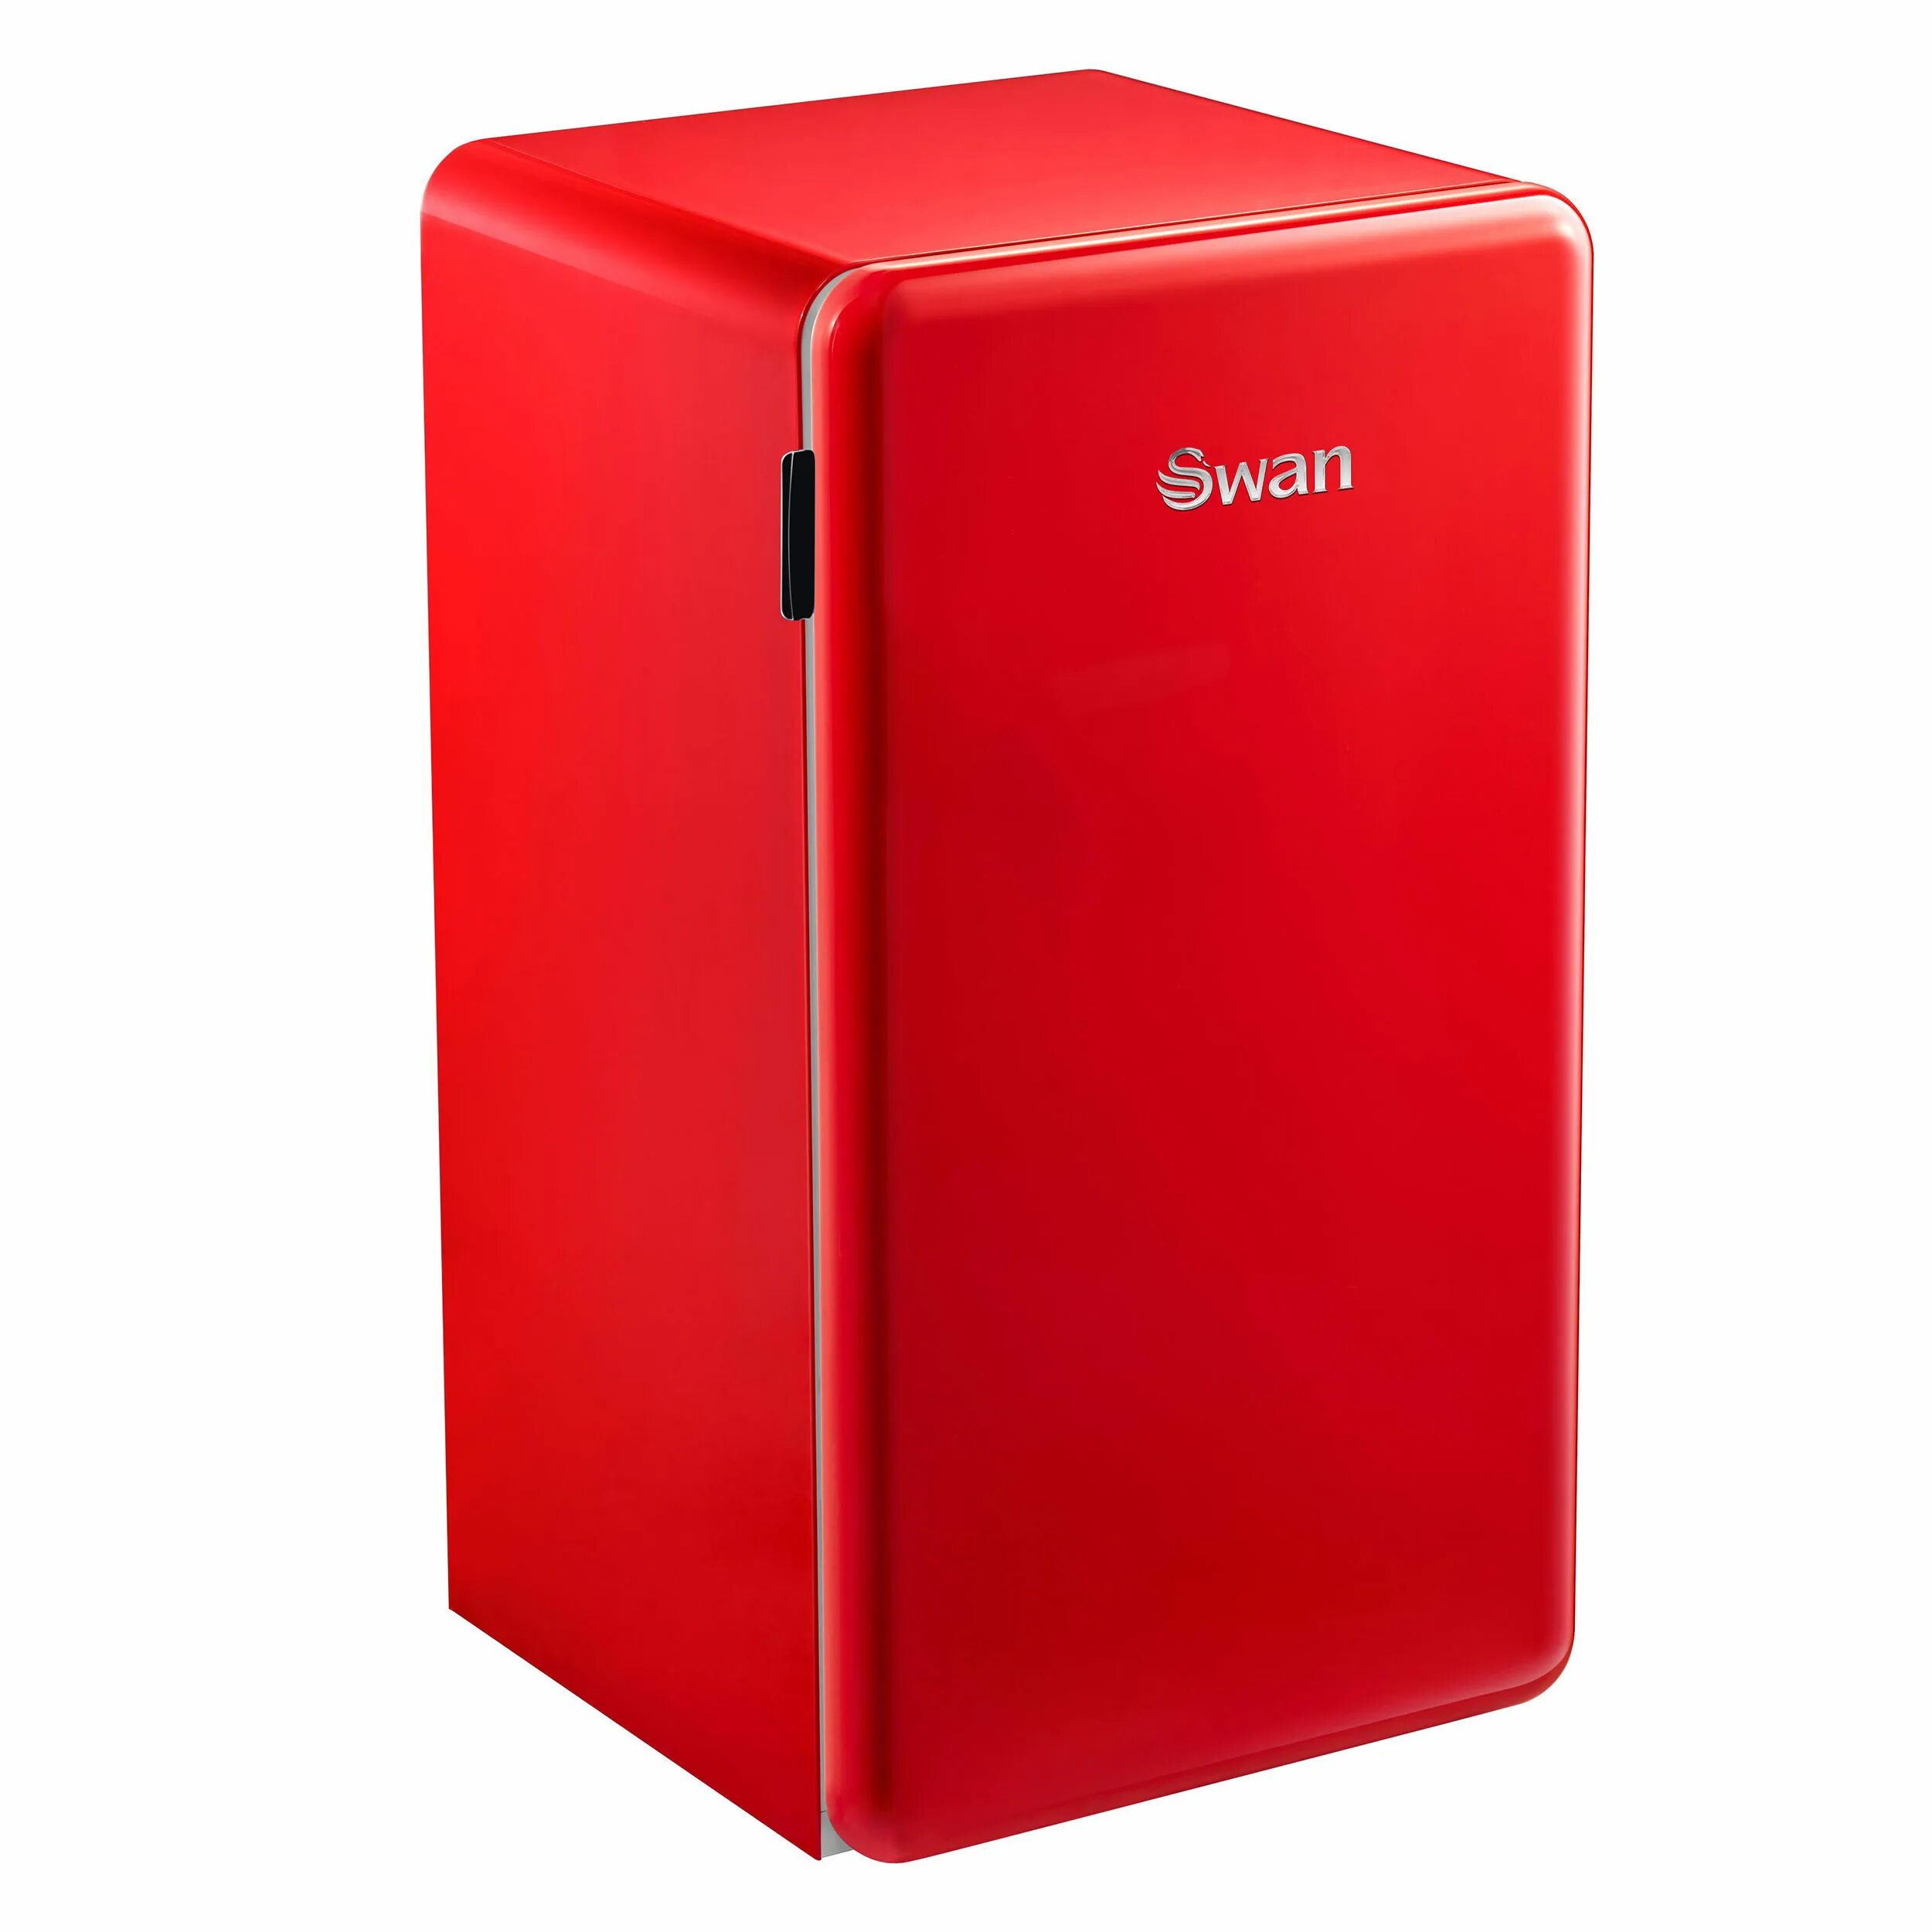 Холодильник компактный DEXP RF-sd090rma/r красный. ДНС холодильник красный дексп. Холодильник компактный DEXP RF-sd090rma/b черный. Дексп холодильник красный красный. Дексп холодильник купить